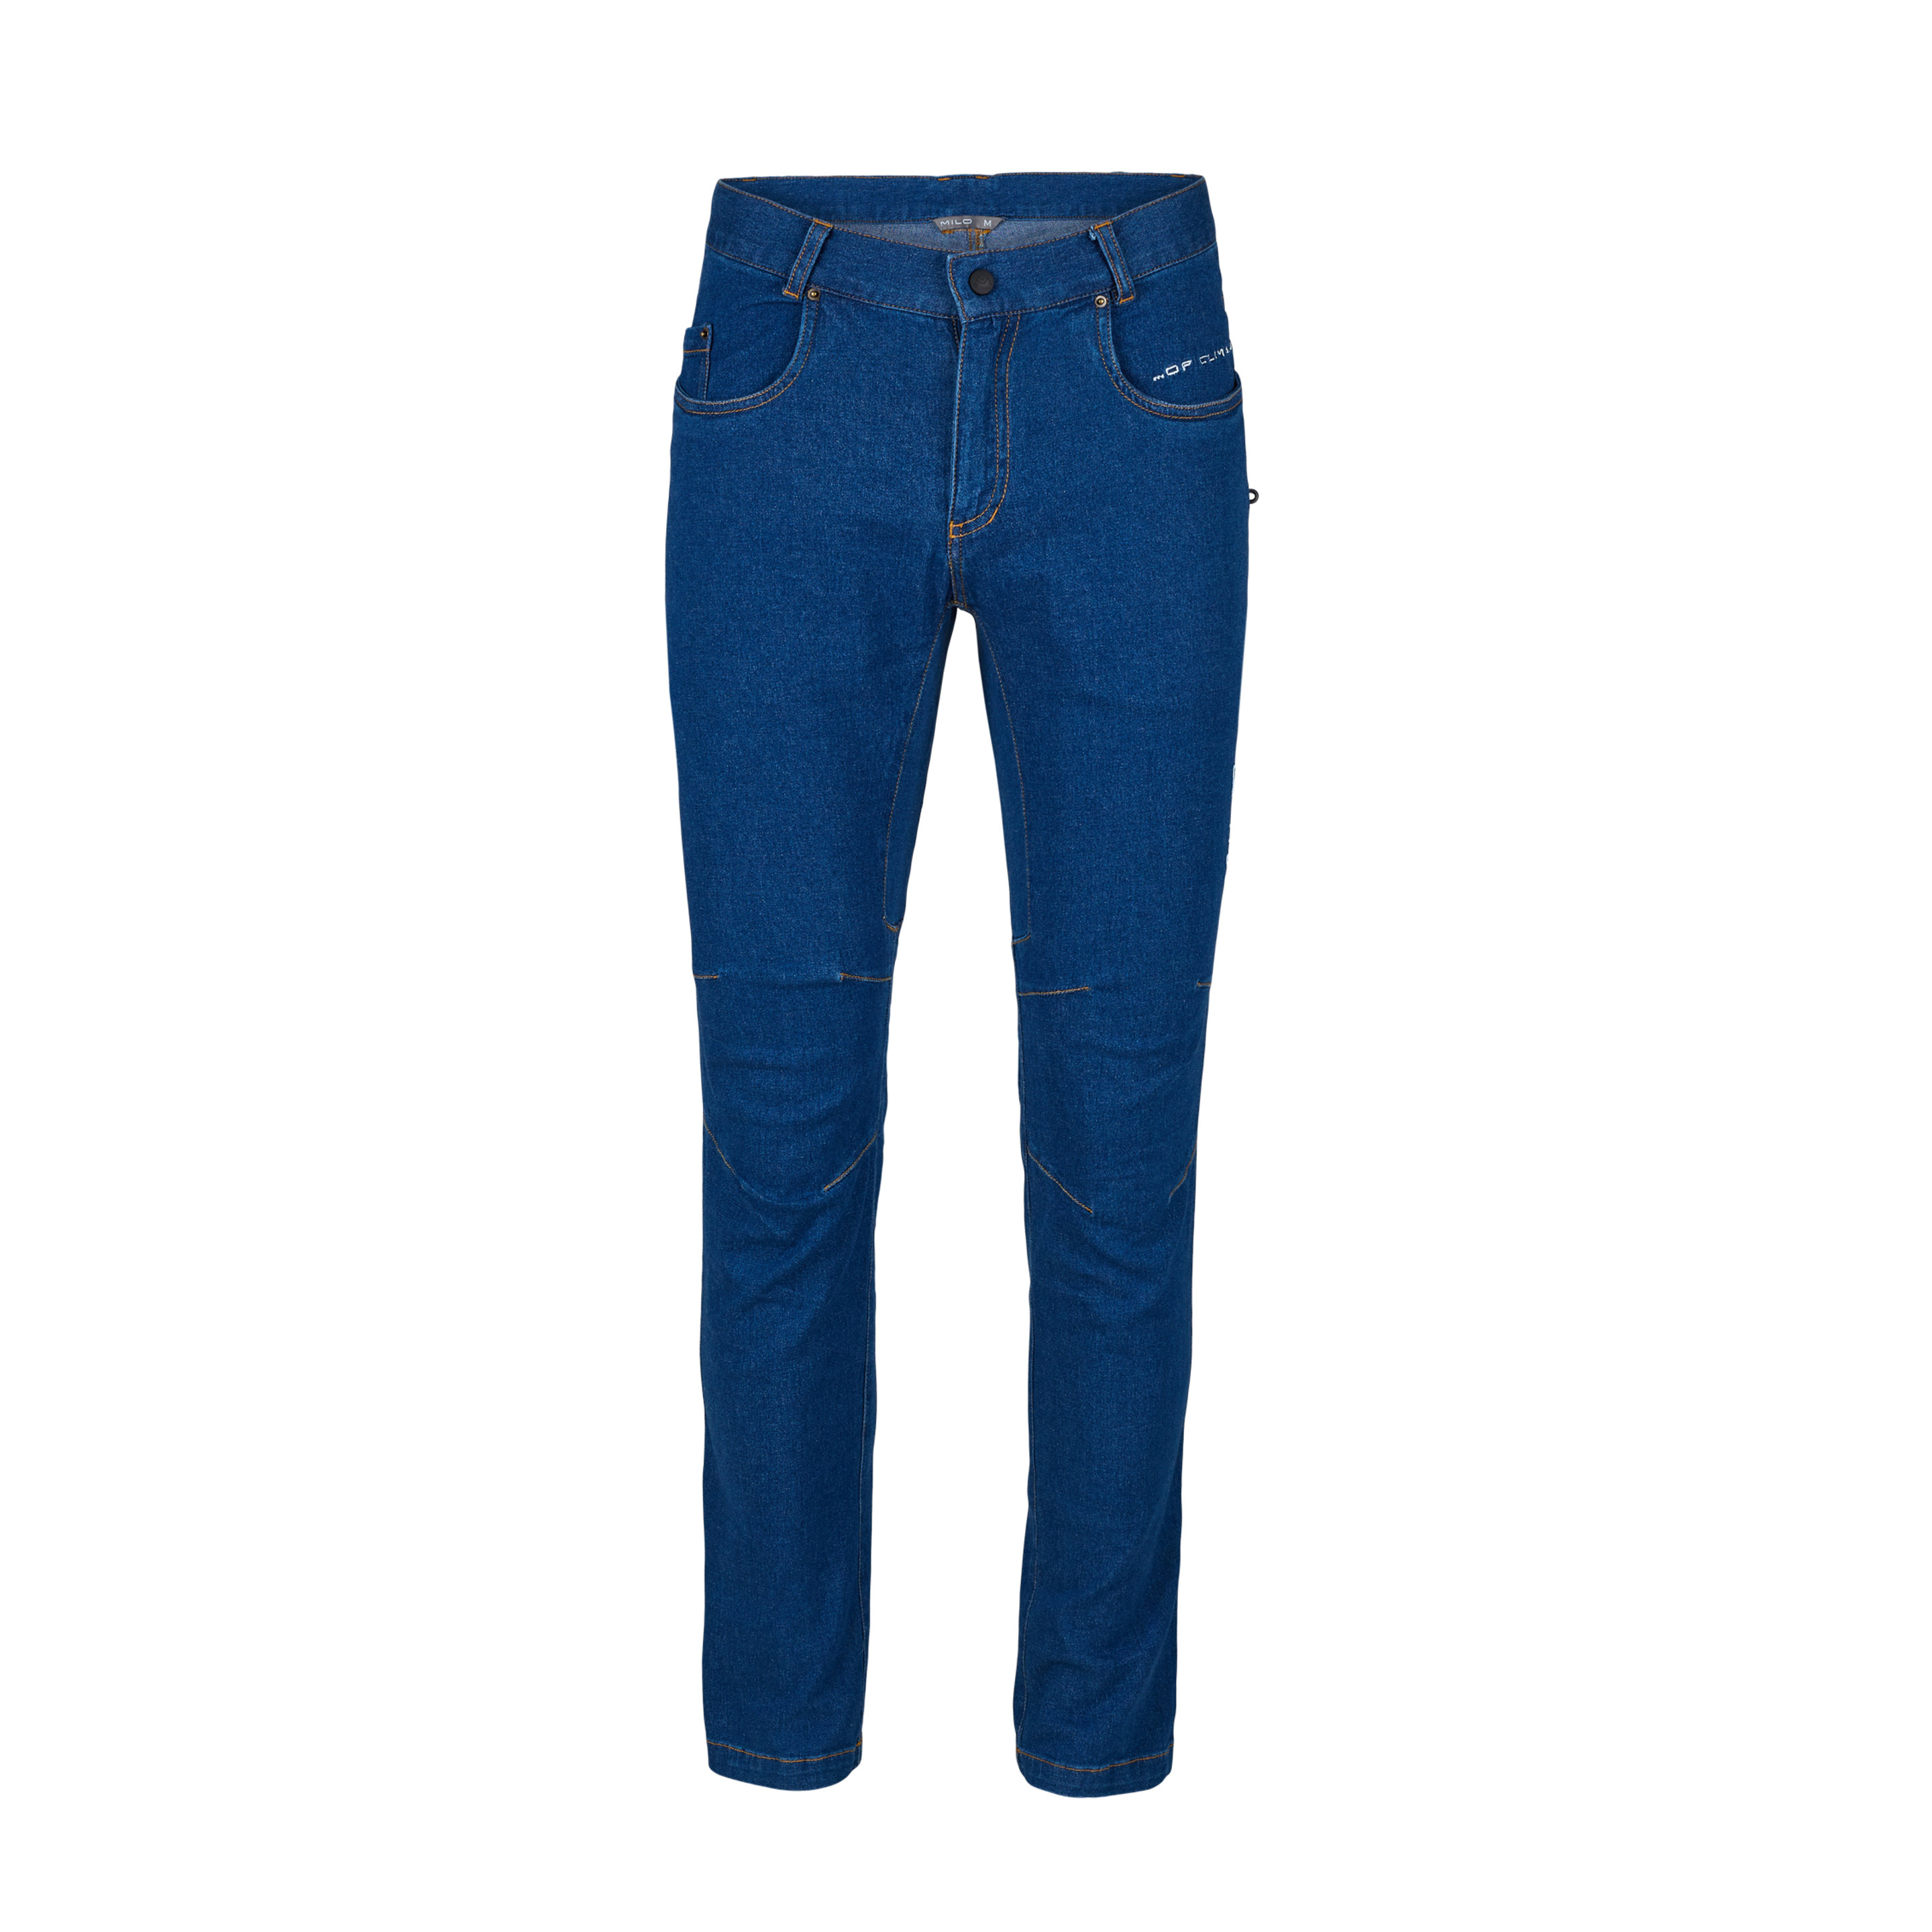 Pantalón Escalada Milo Thong Jeans - Azul Denim  MKP